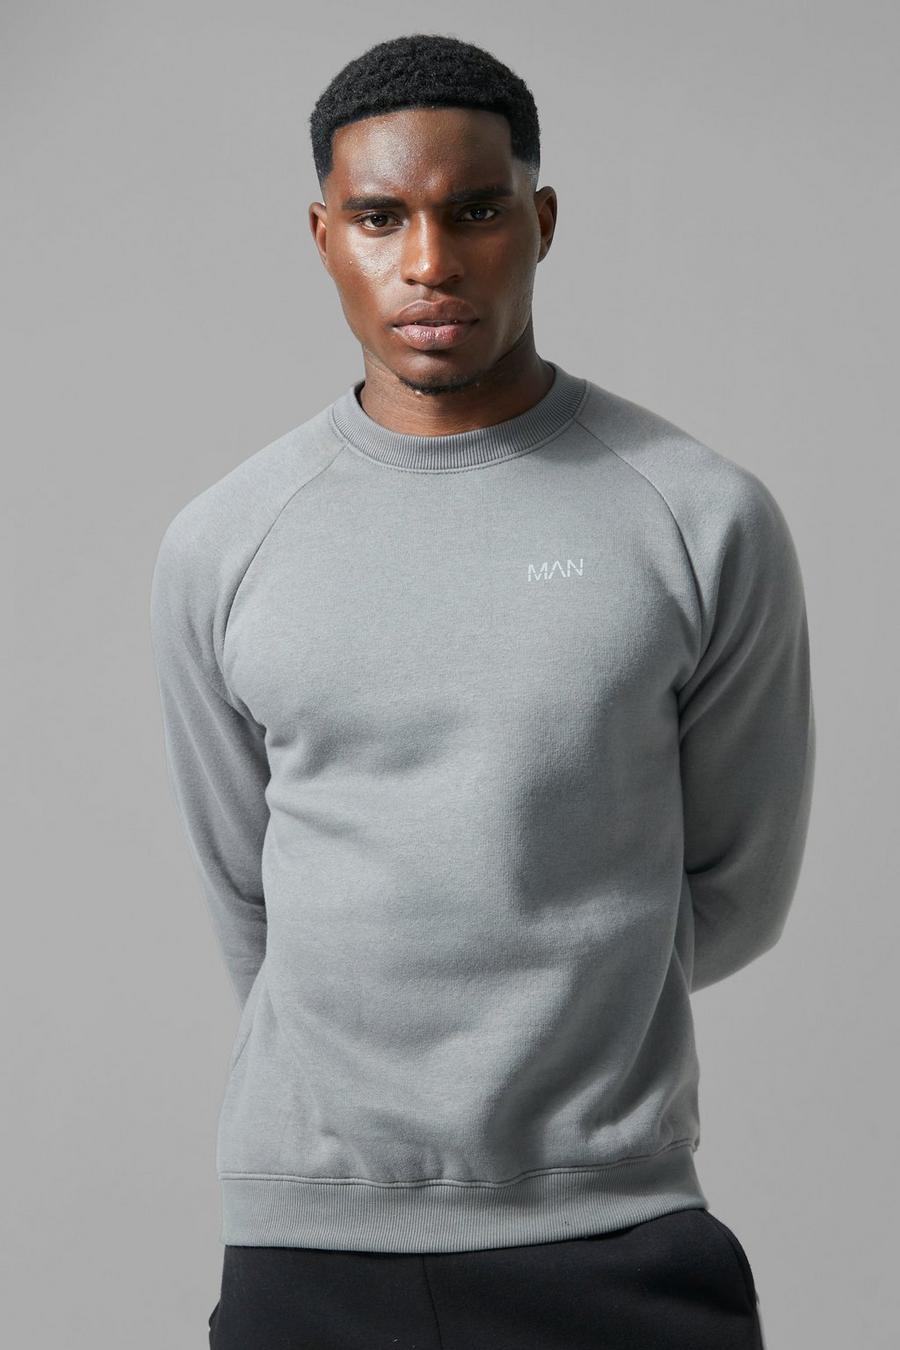 Charcoal grey Les Tien two-tone crewneck sweatshirt